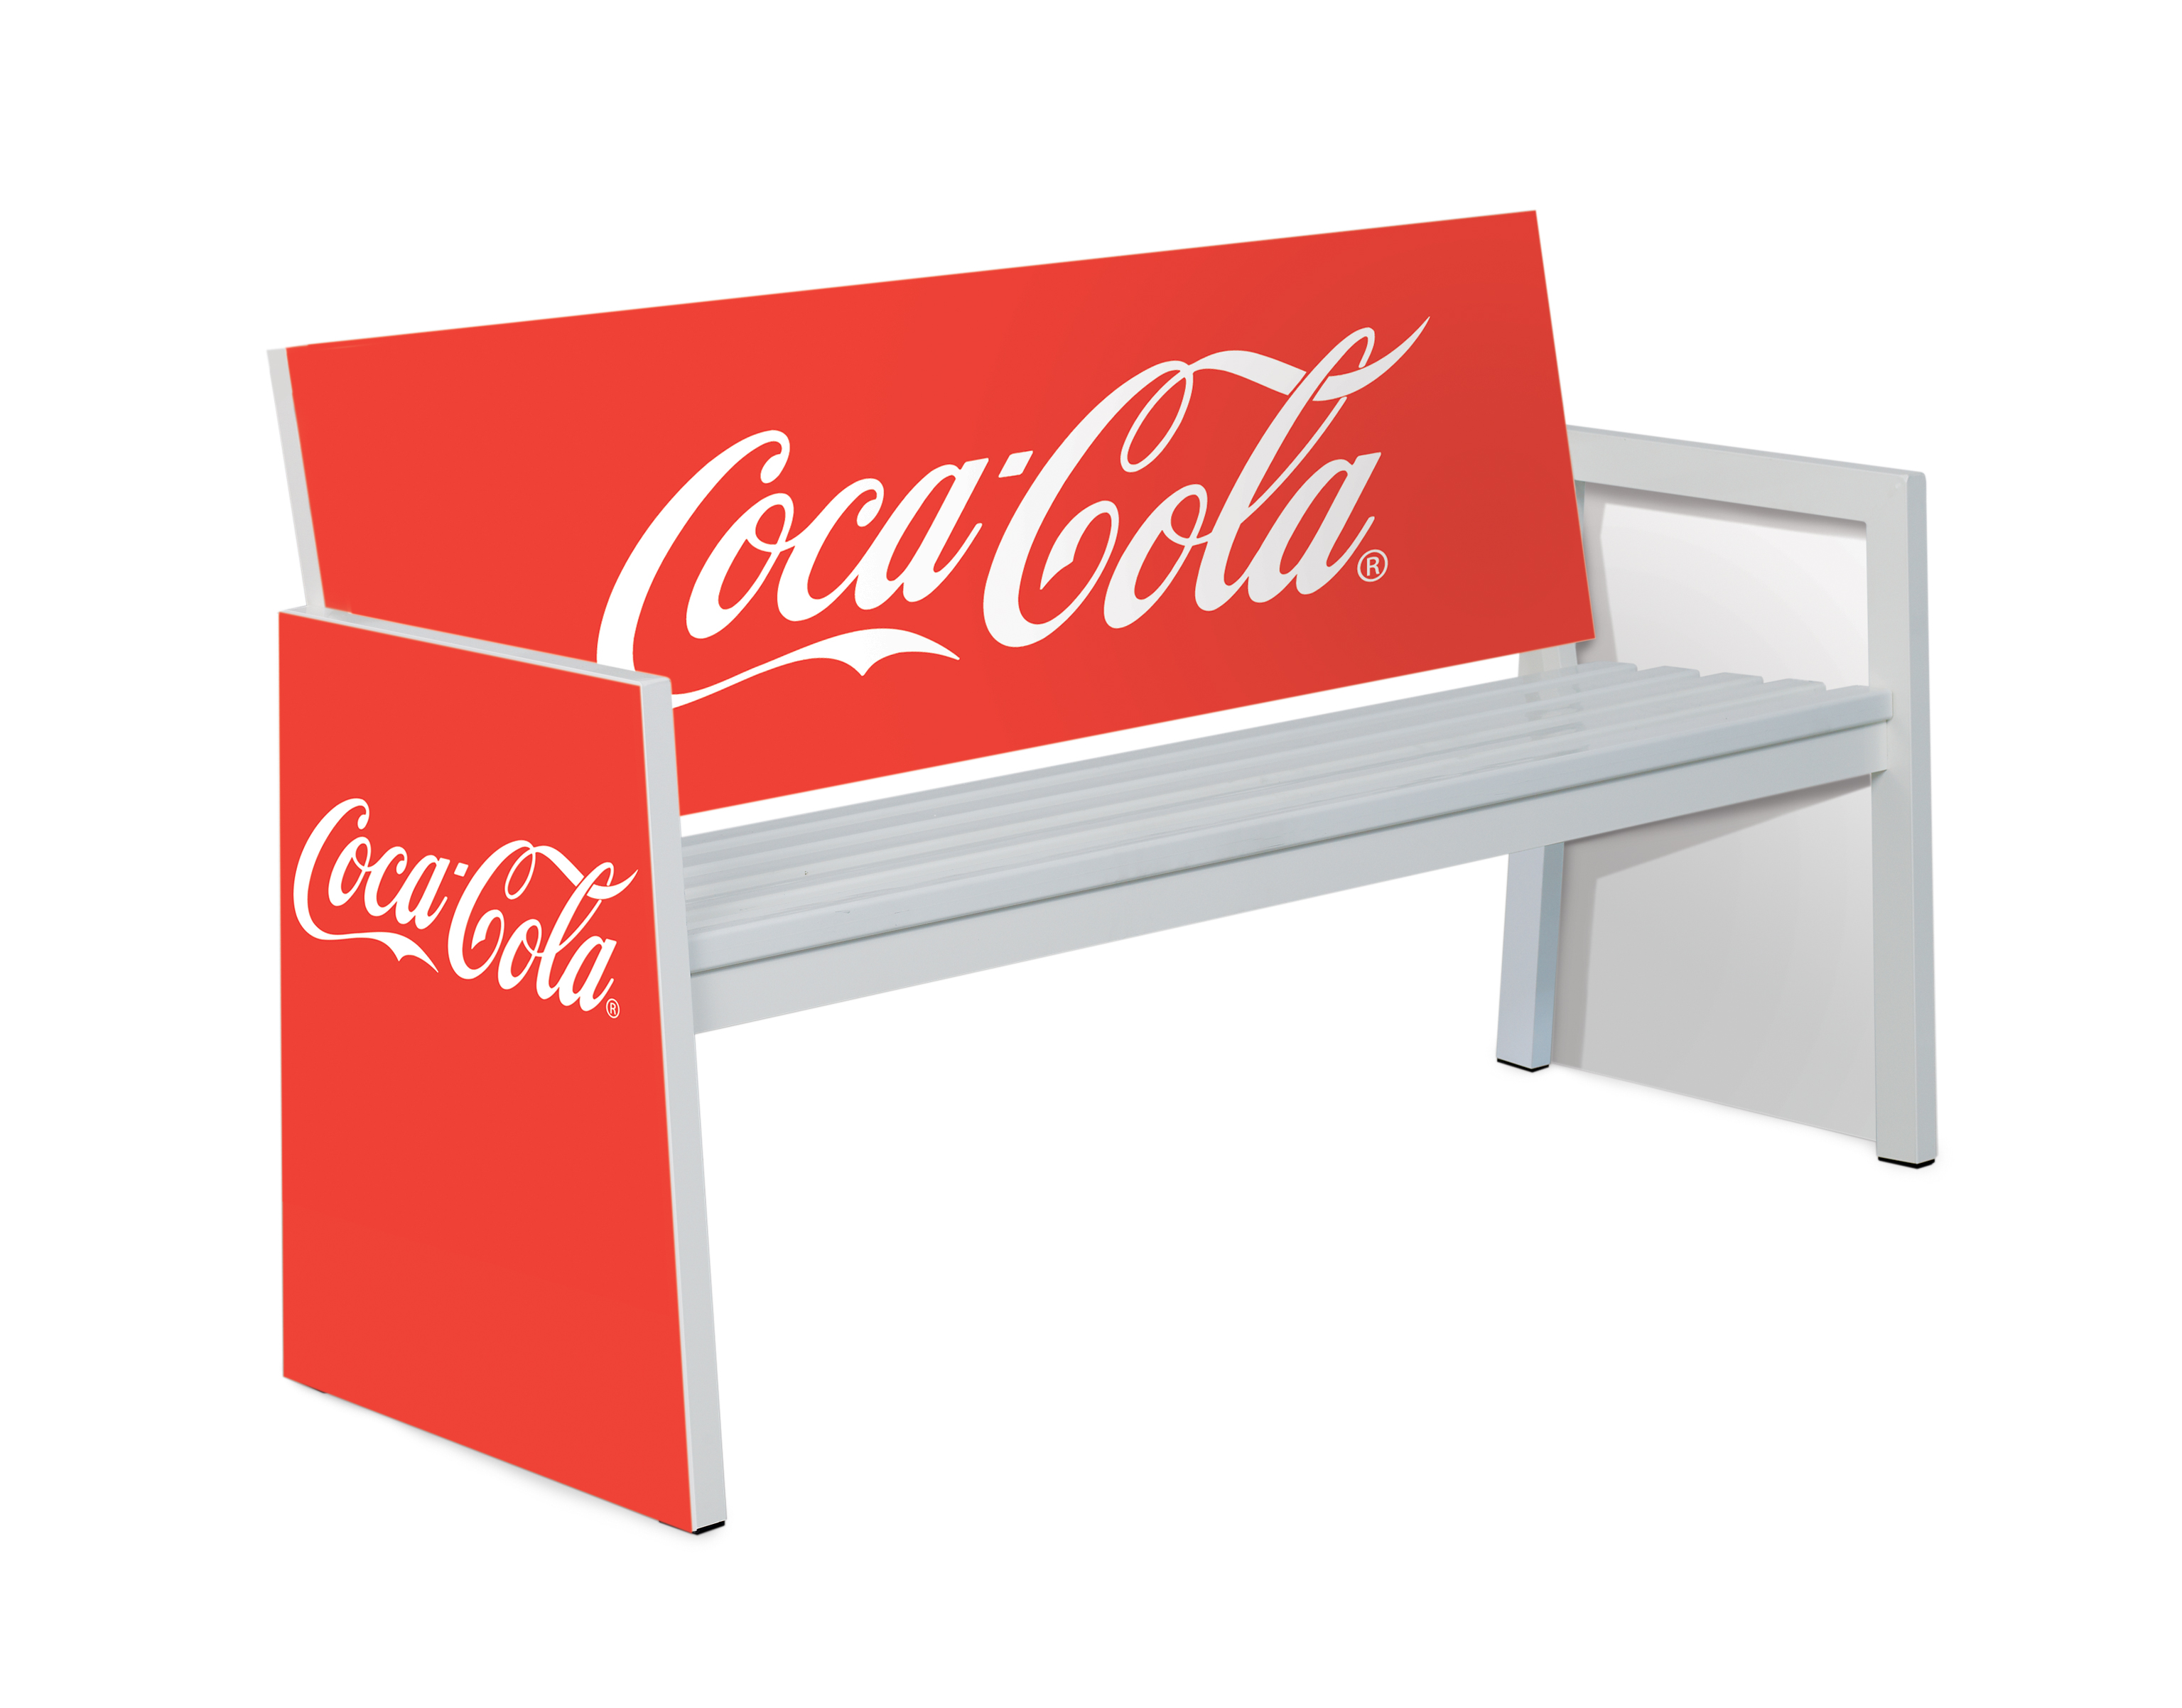 Werbebank_GrandSlam_CocaCola_UniversalSport